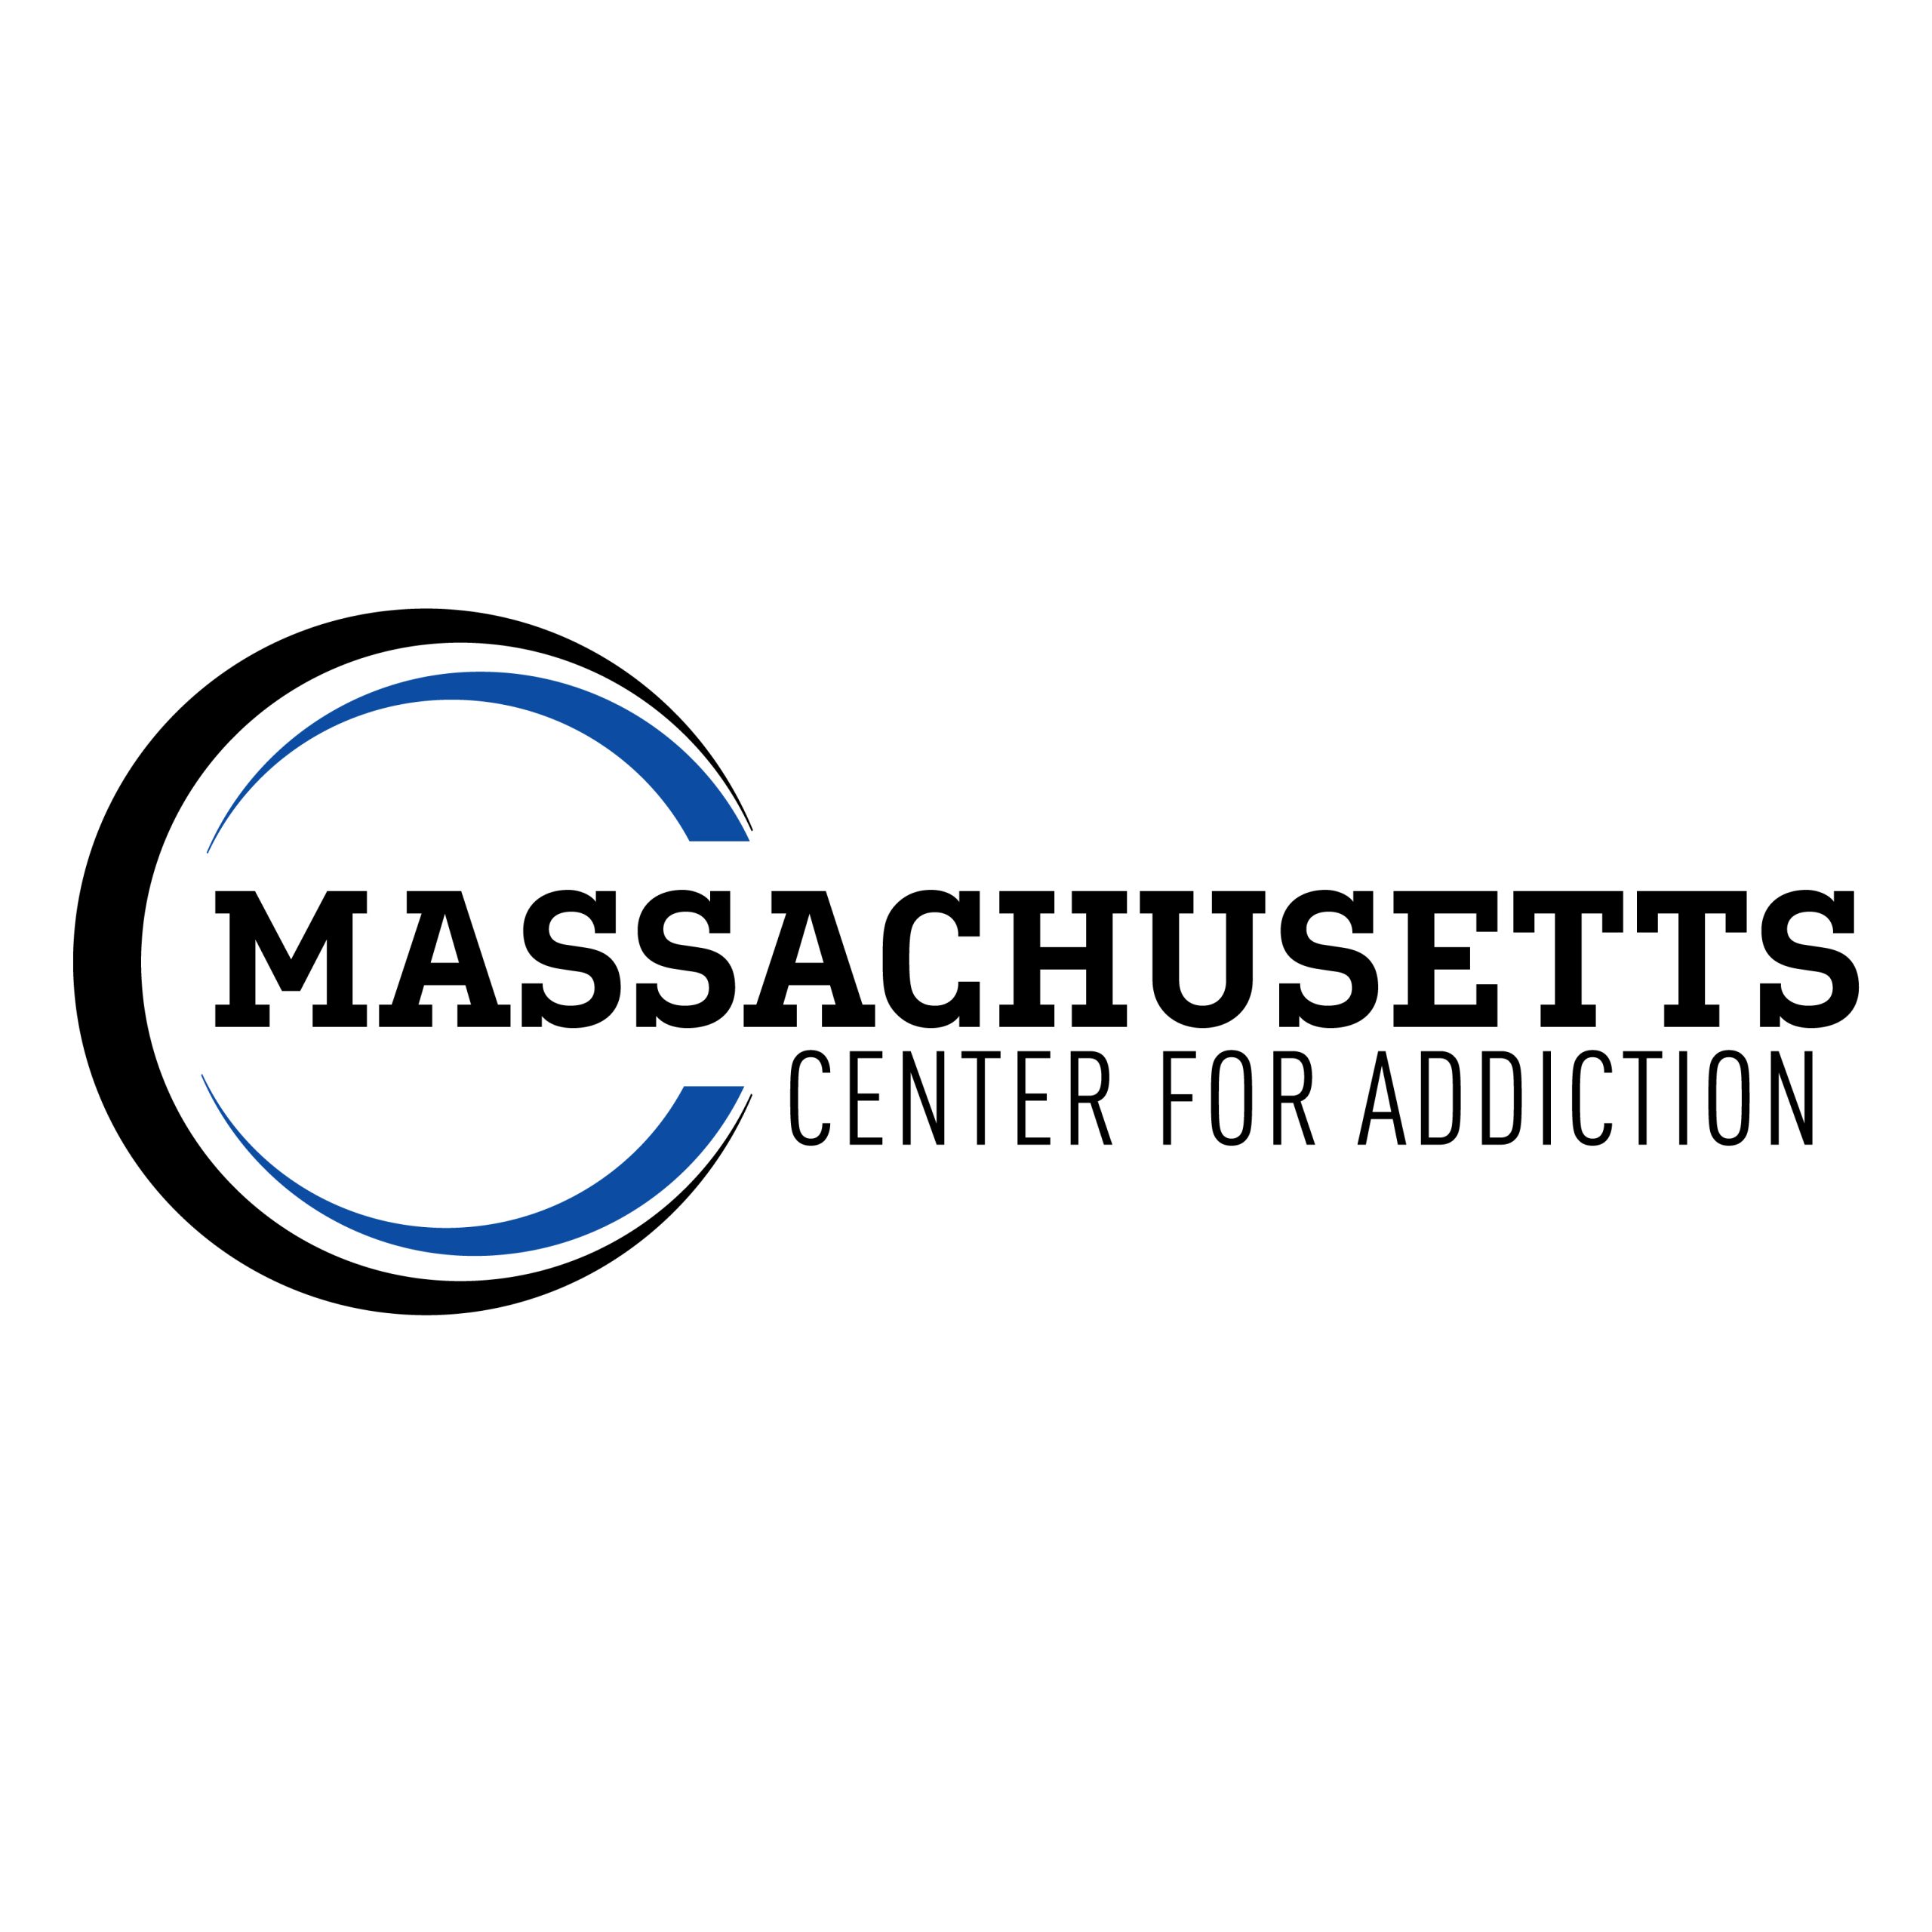 Massachusetts Center for Addiction